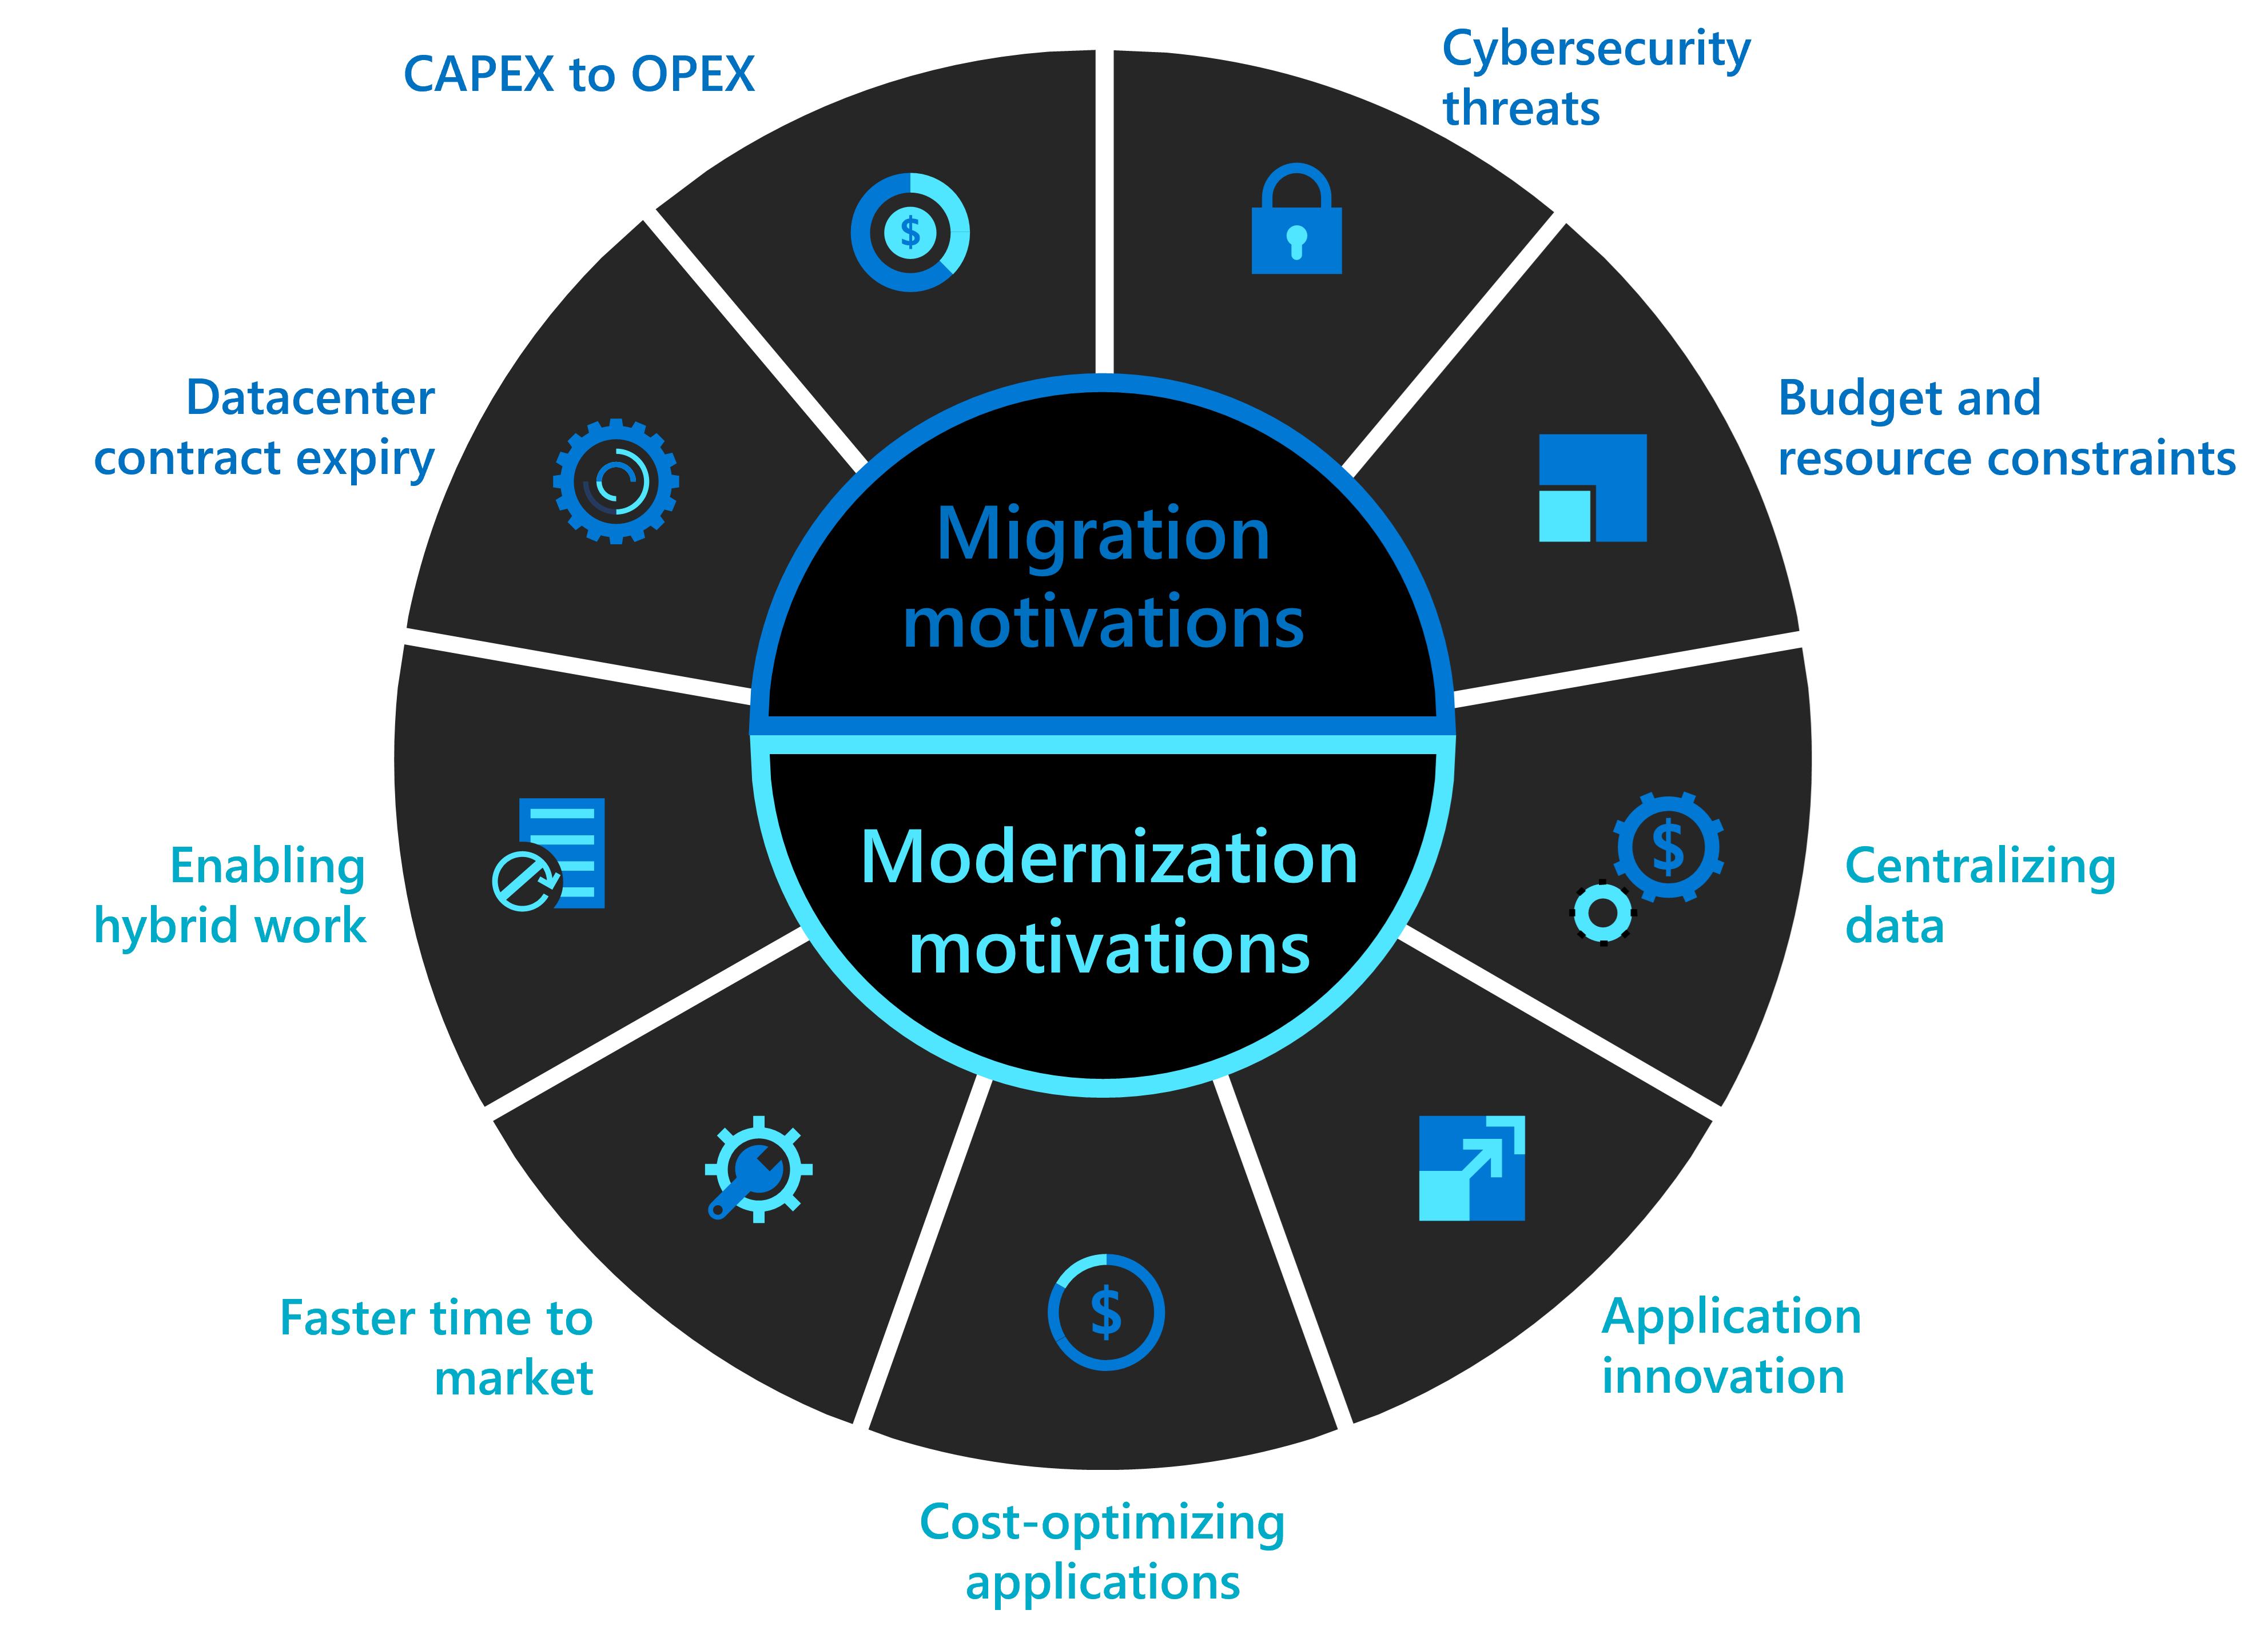 移行の動機 5 つとモダン化の動機 5 つを示した図。モダン化の 5 つの動機とは、ハイブリッド ワークの実現、市場投入までの時間の短縮、アプリケーションのコスト最適化、アプリケーションのイノベーション、データの一元化です。